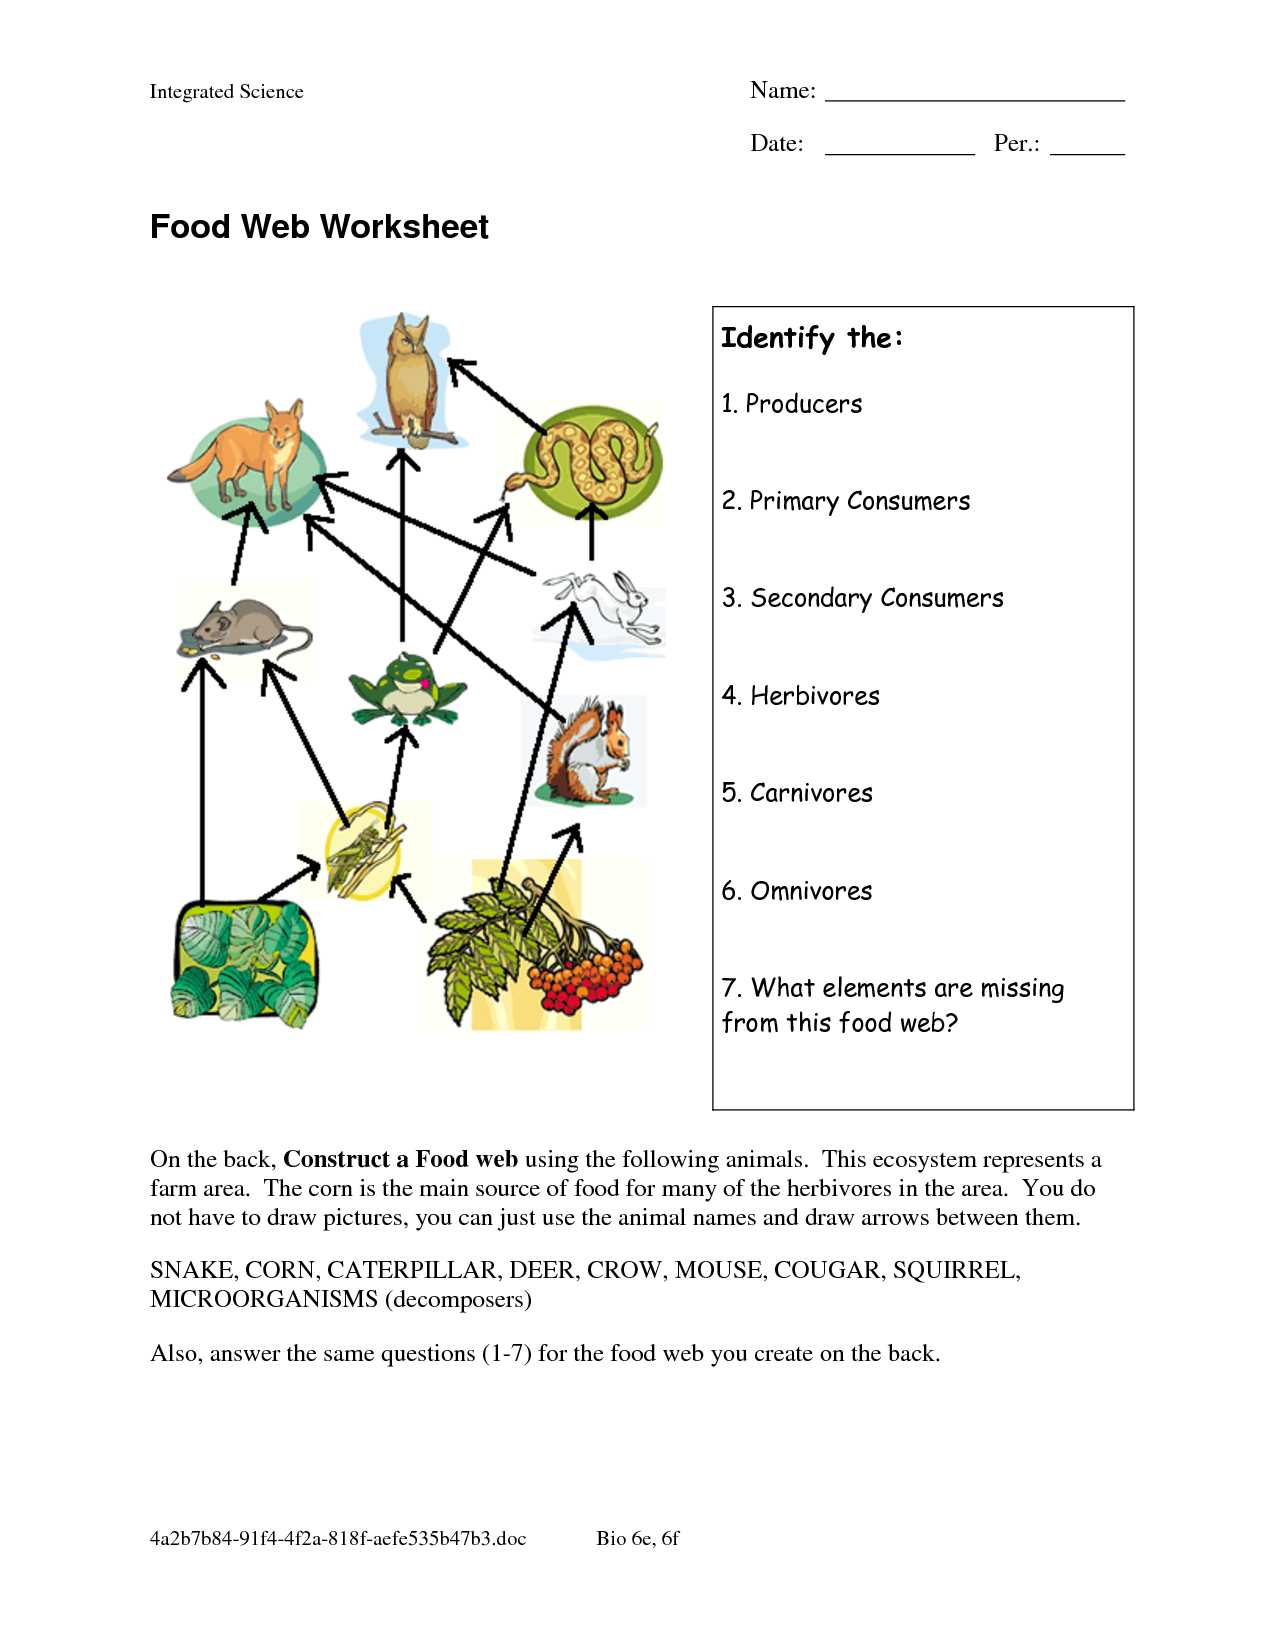 Dna Reading Comprehension Worksheet together with Food Web Worksheets Food Web Worksheet Doc